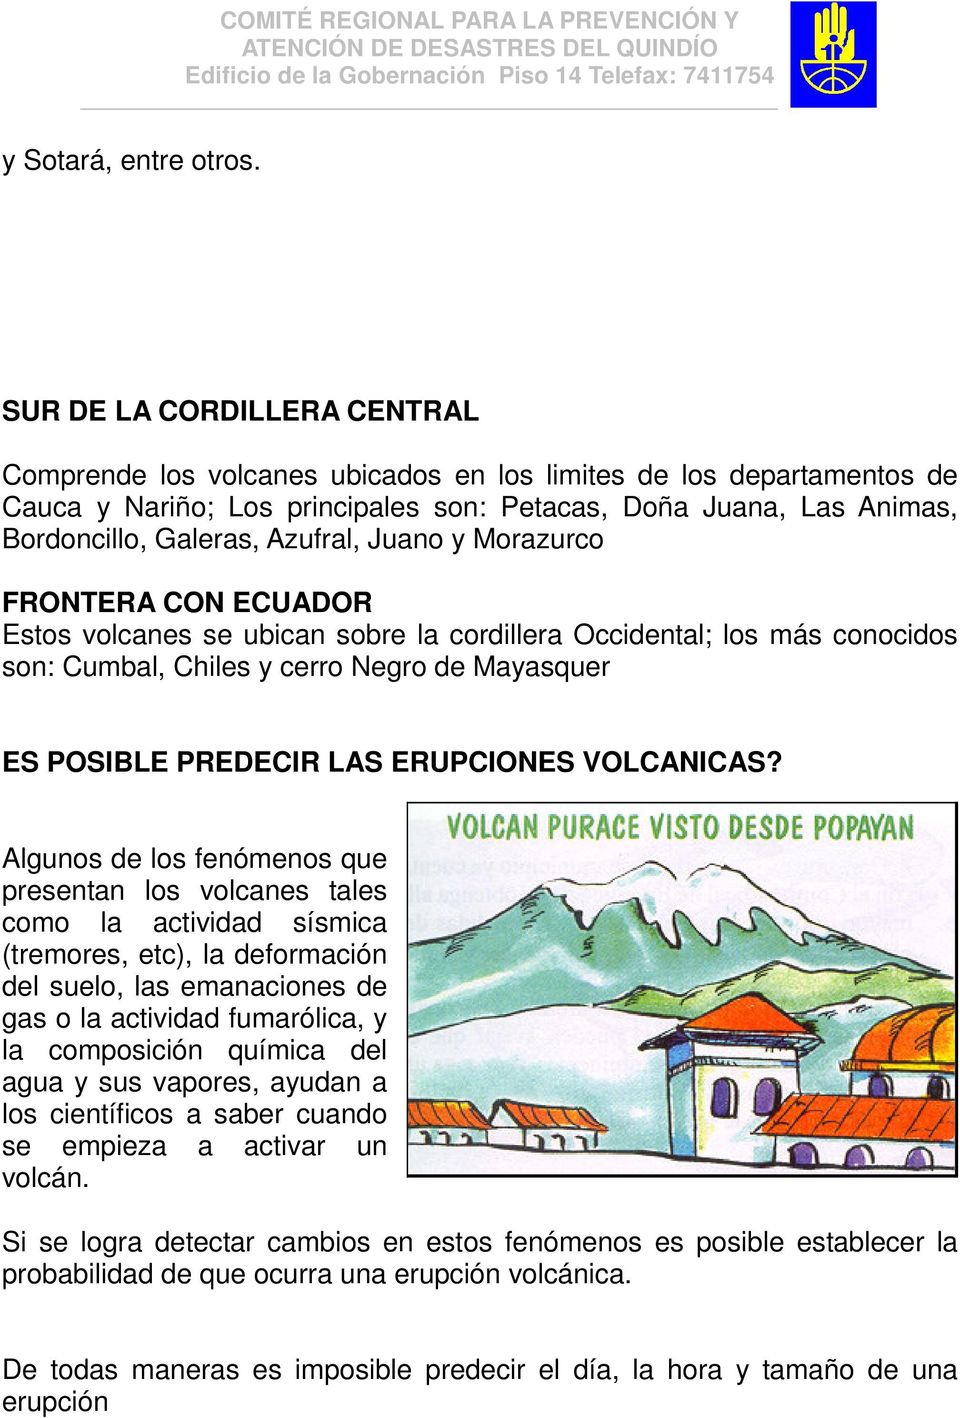 Azufral, Juano y Morazurco FRONTERA CON ECUADOR Estos volcanes se ubican sobre la cordillera Occidental; los más conocidos son: Cumbal, Chiles y cerro Negro de Mayasquer ES POSIBLE PREDECIR LAS